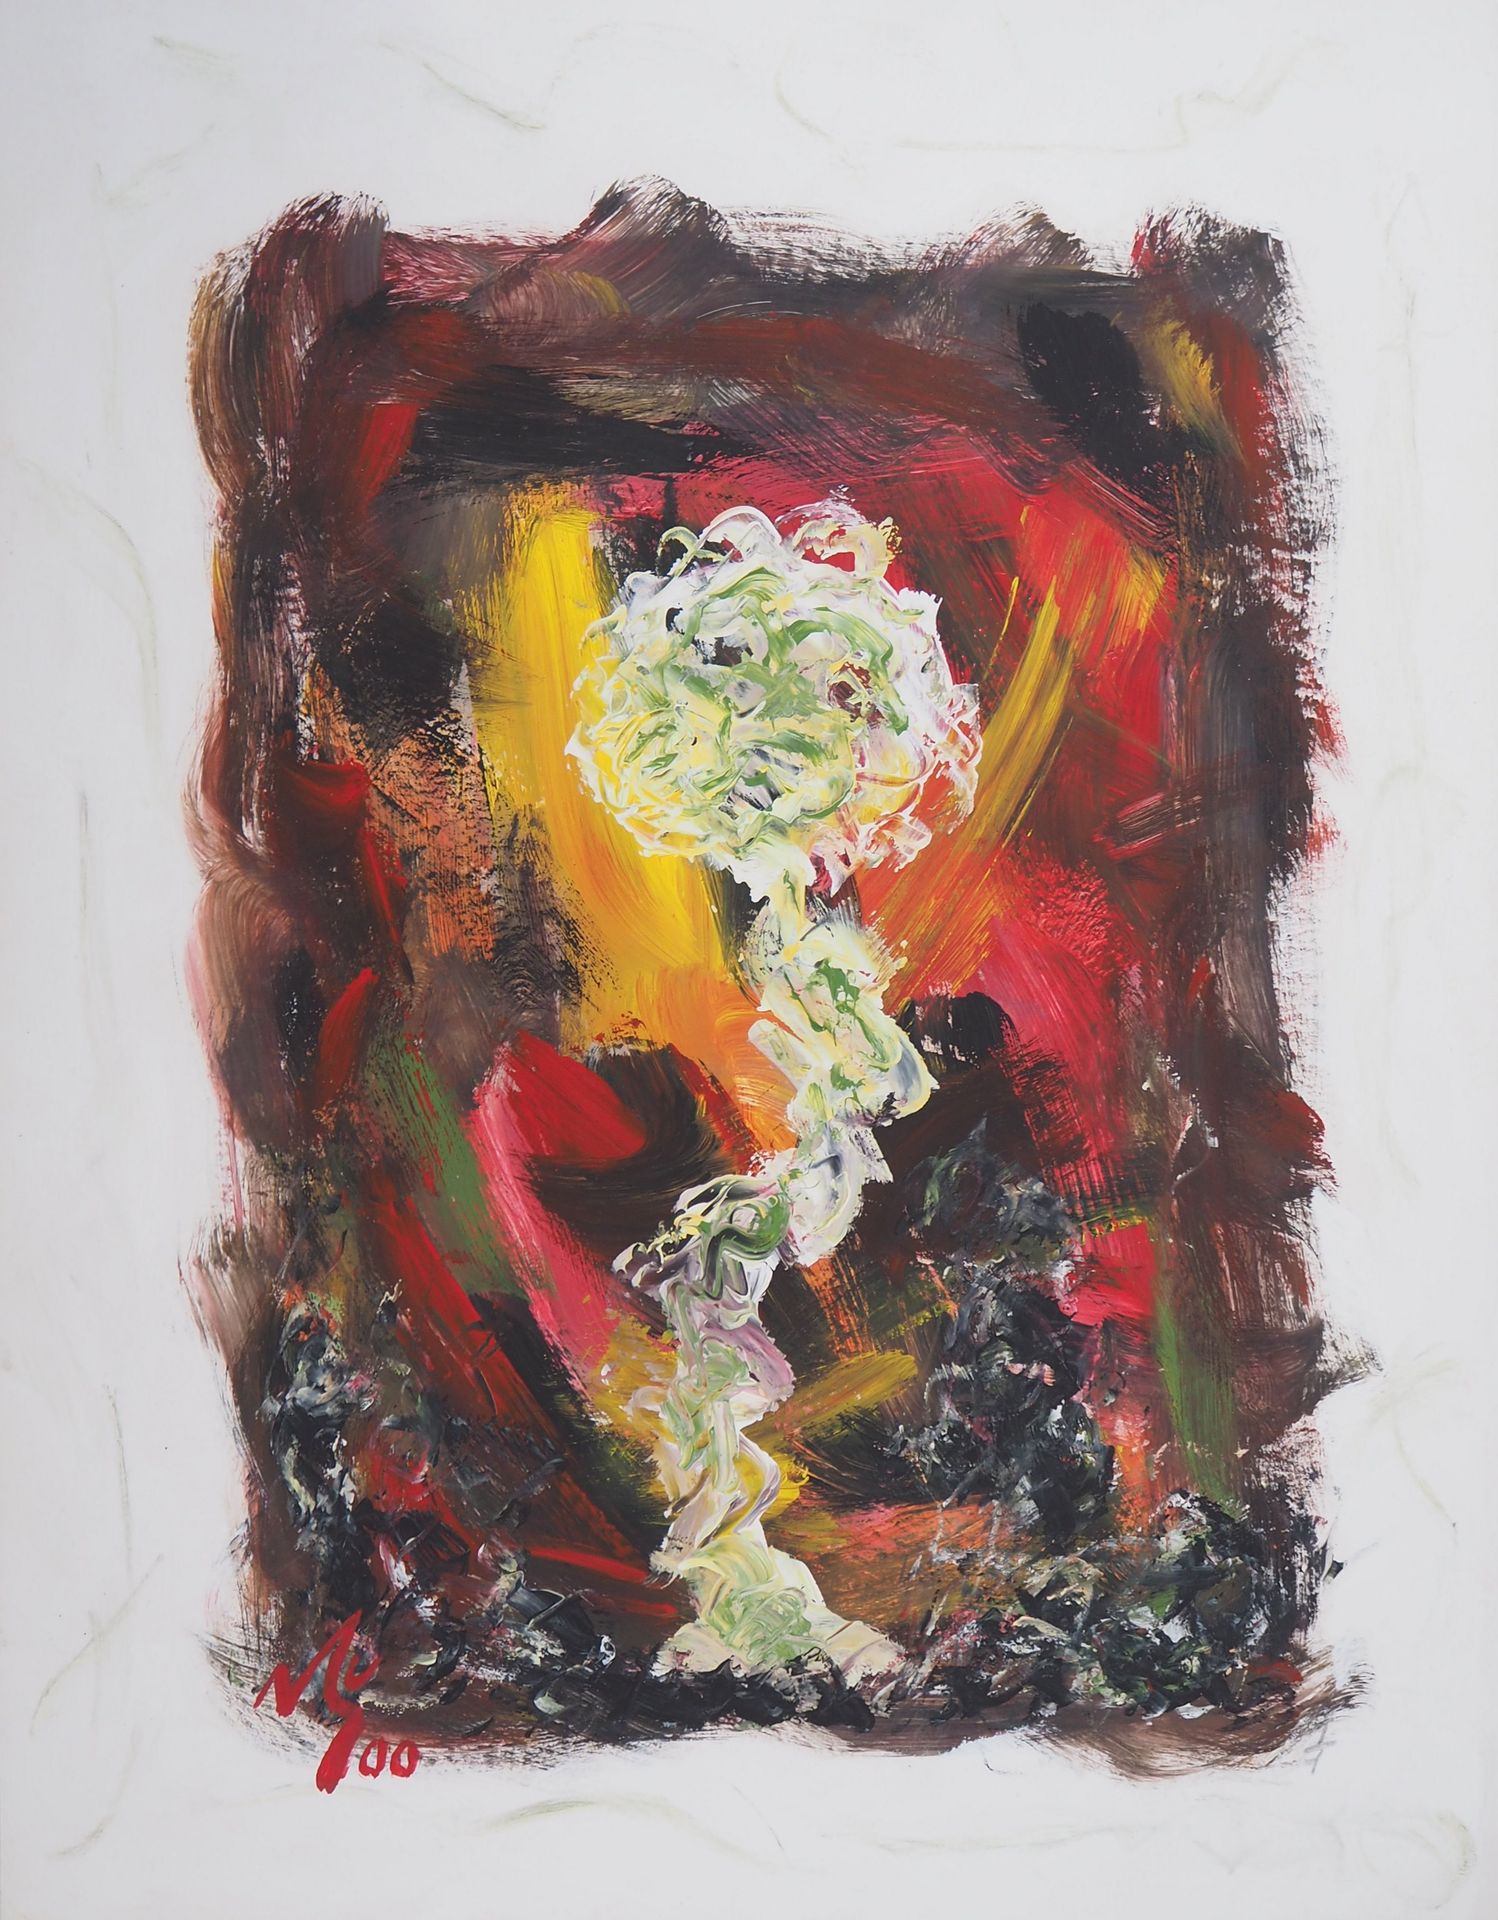 Michel GUIGNARD Michel Guignard

Blume in einer bräunlichen Landschaft, 2000

Or&hellip;